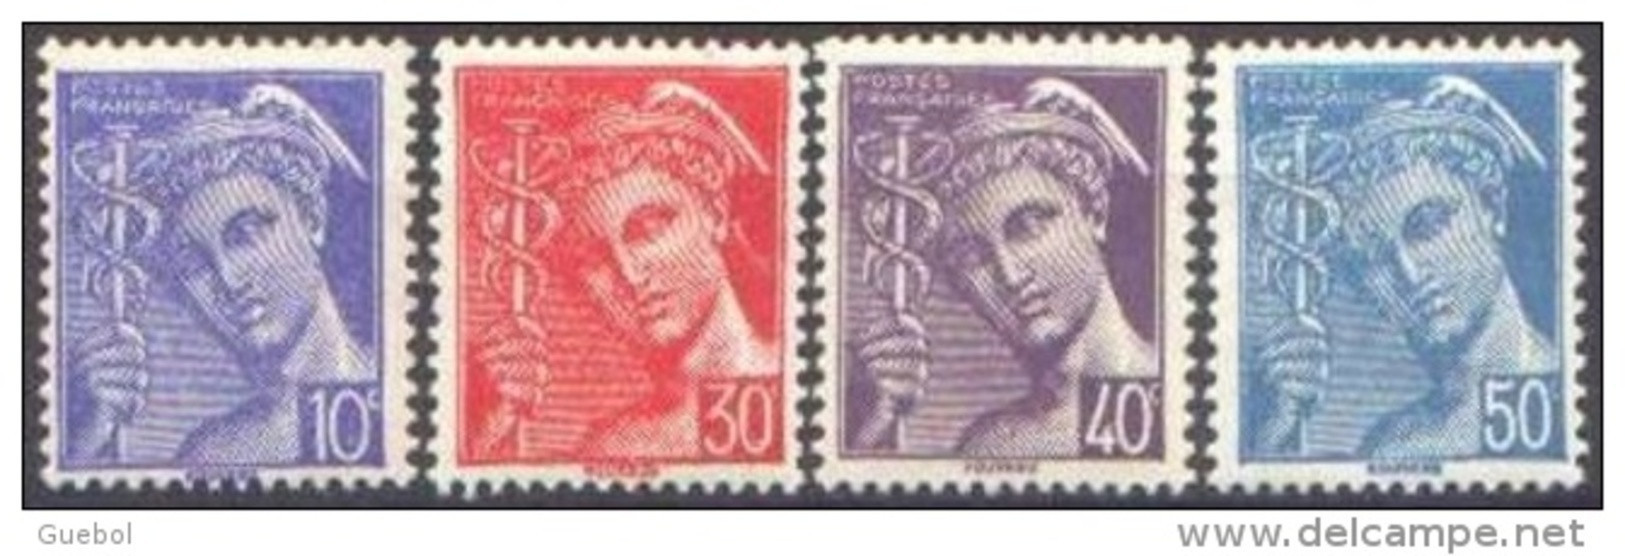 France Mercure N°  546 + 547 + 548 Et 549 ** Les - 10, 30, 40, Et 50 Centimes - Légende Poste Française - 1938-42 Mercurio